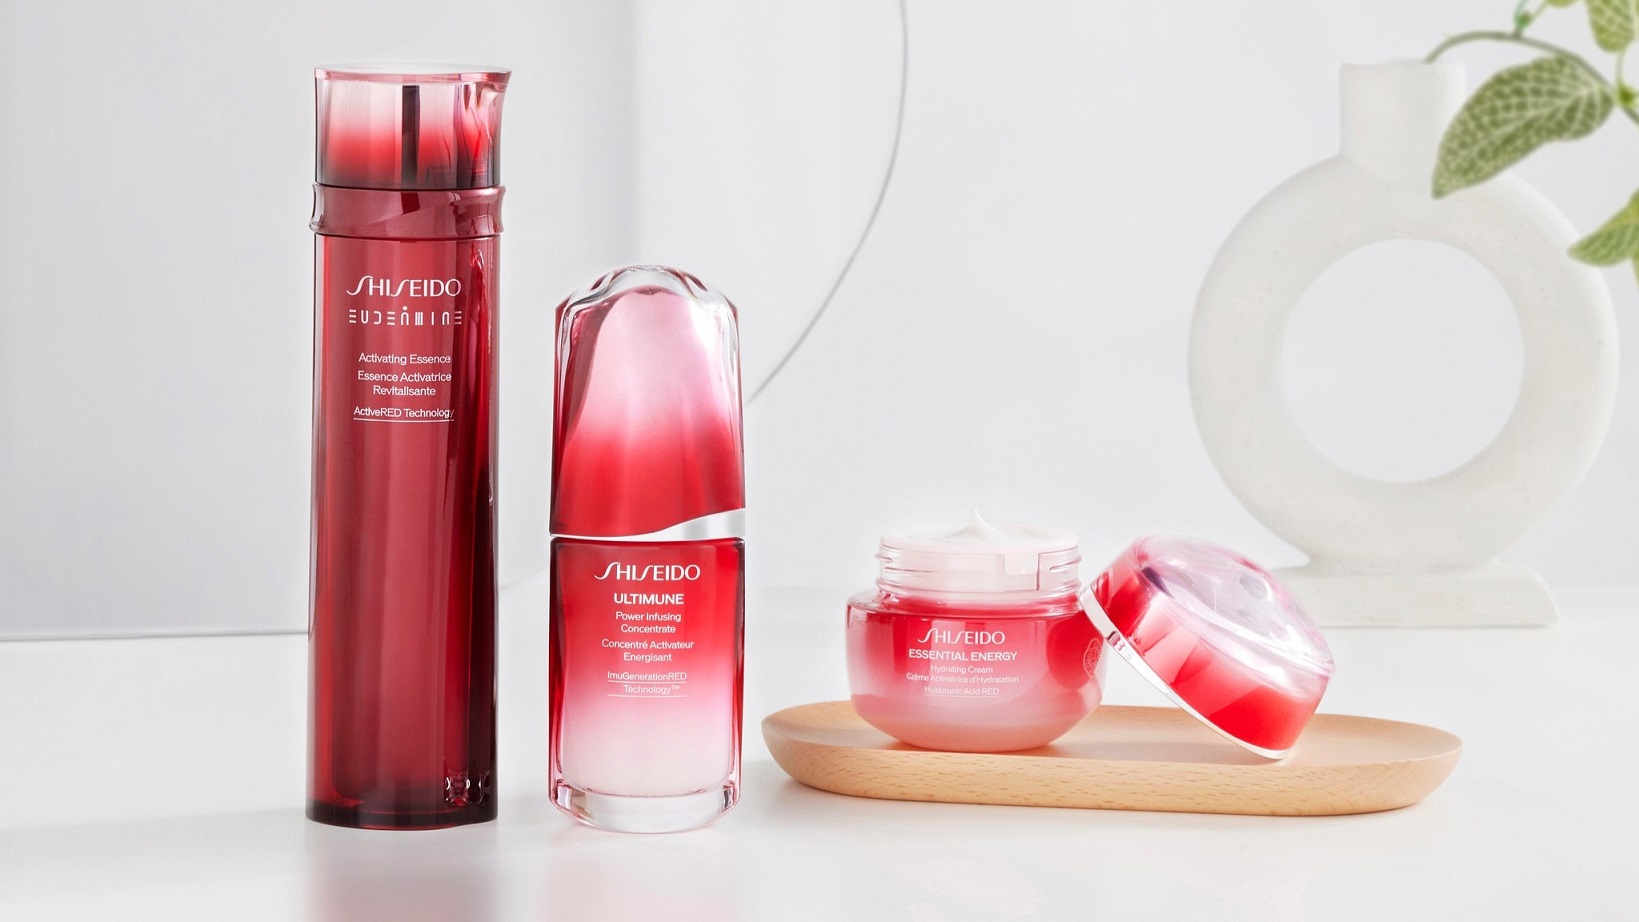 Shiseido India: ‘Seismic shift’ towards skin care and self-care ...